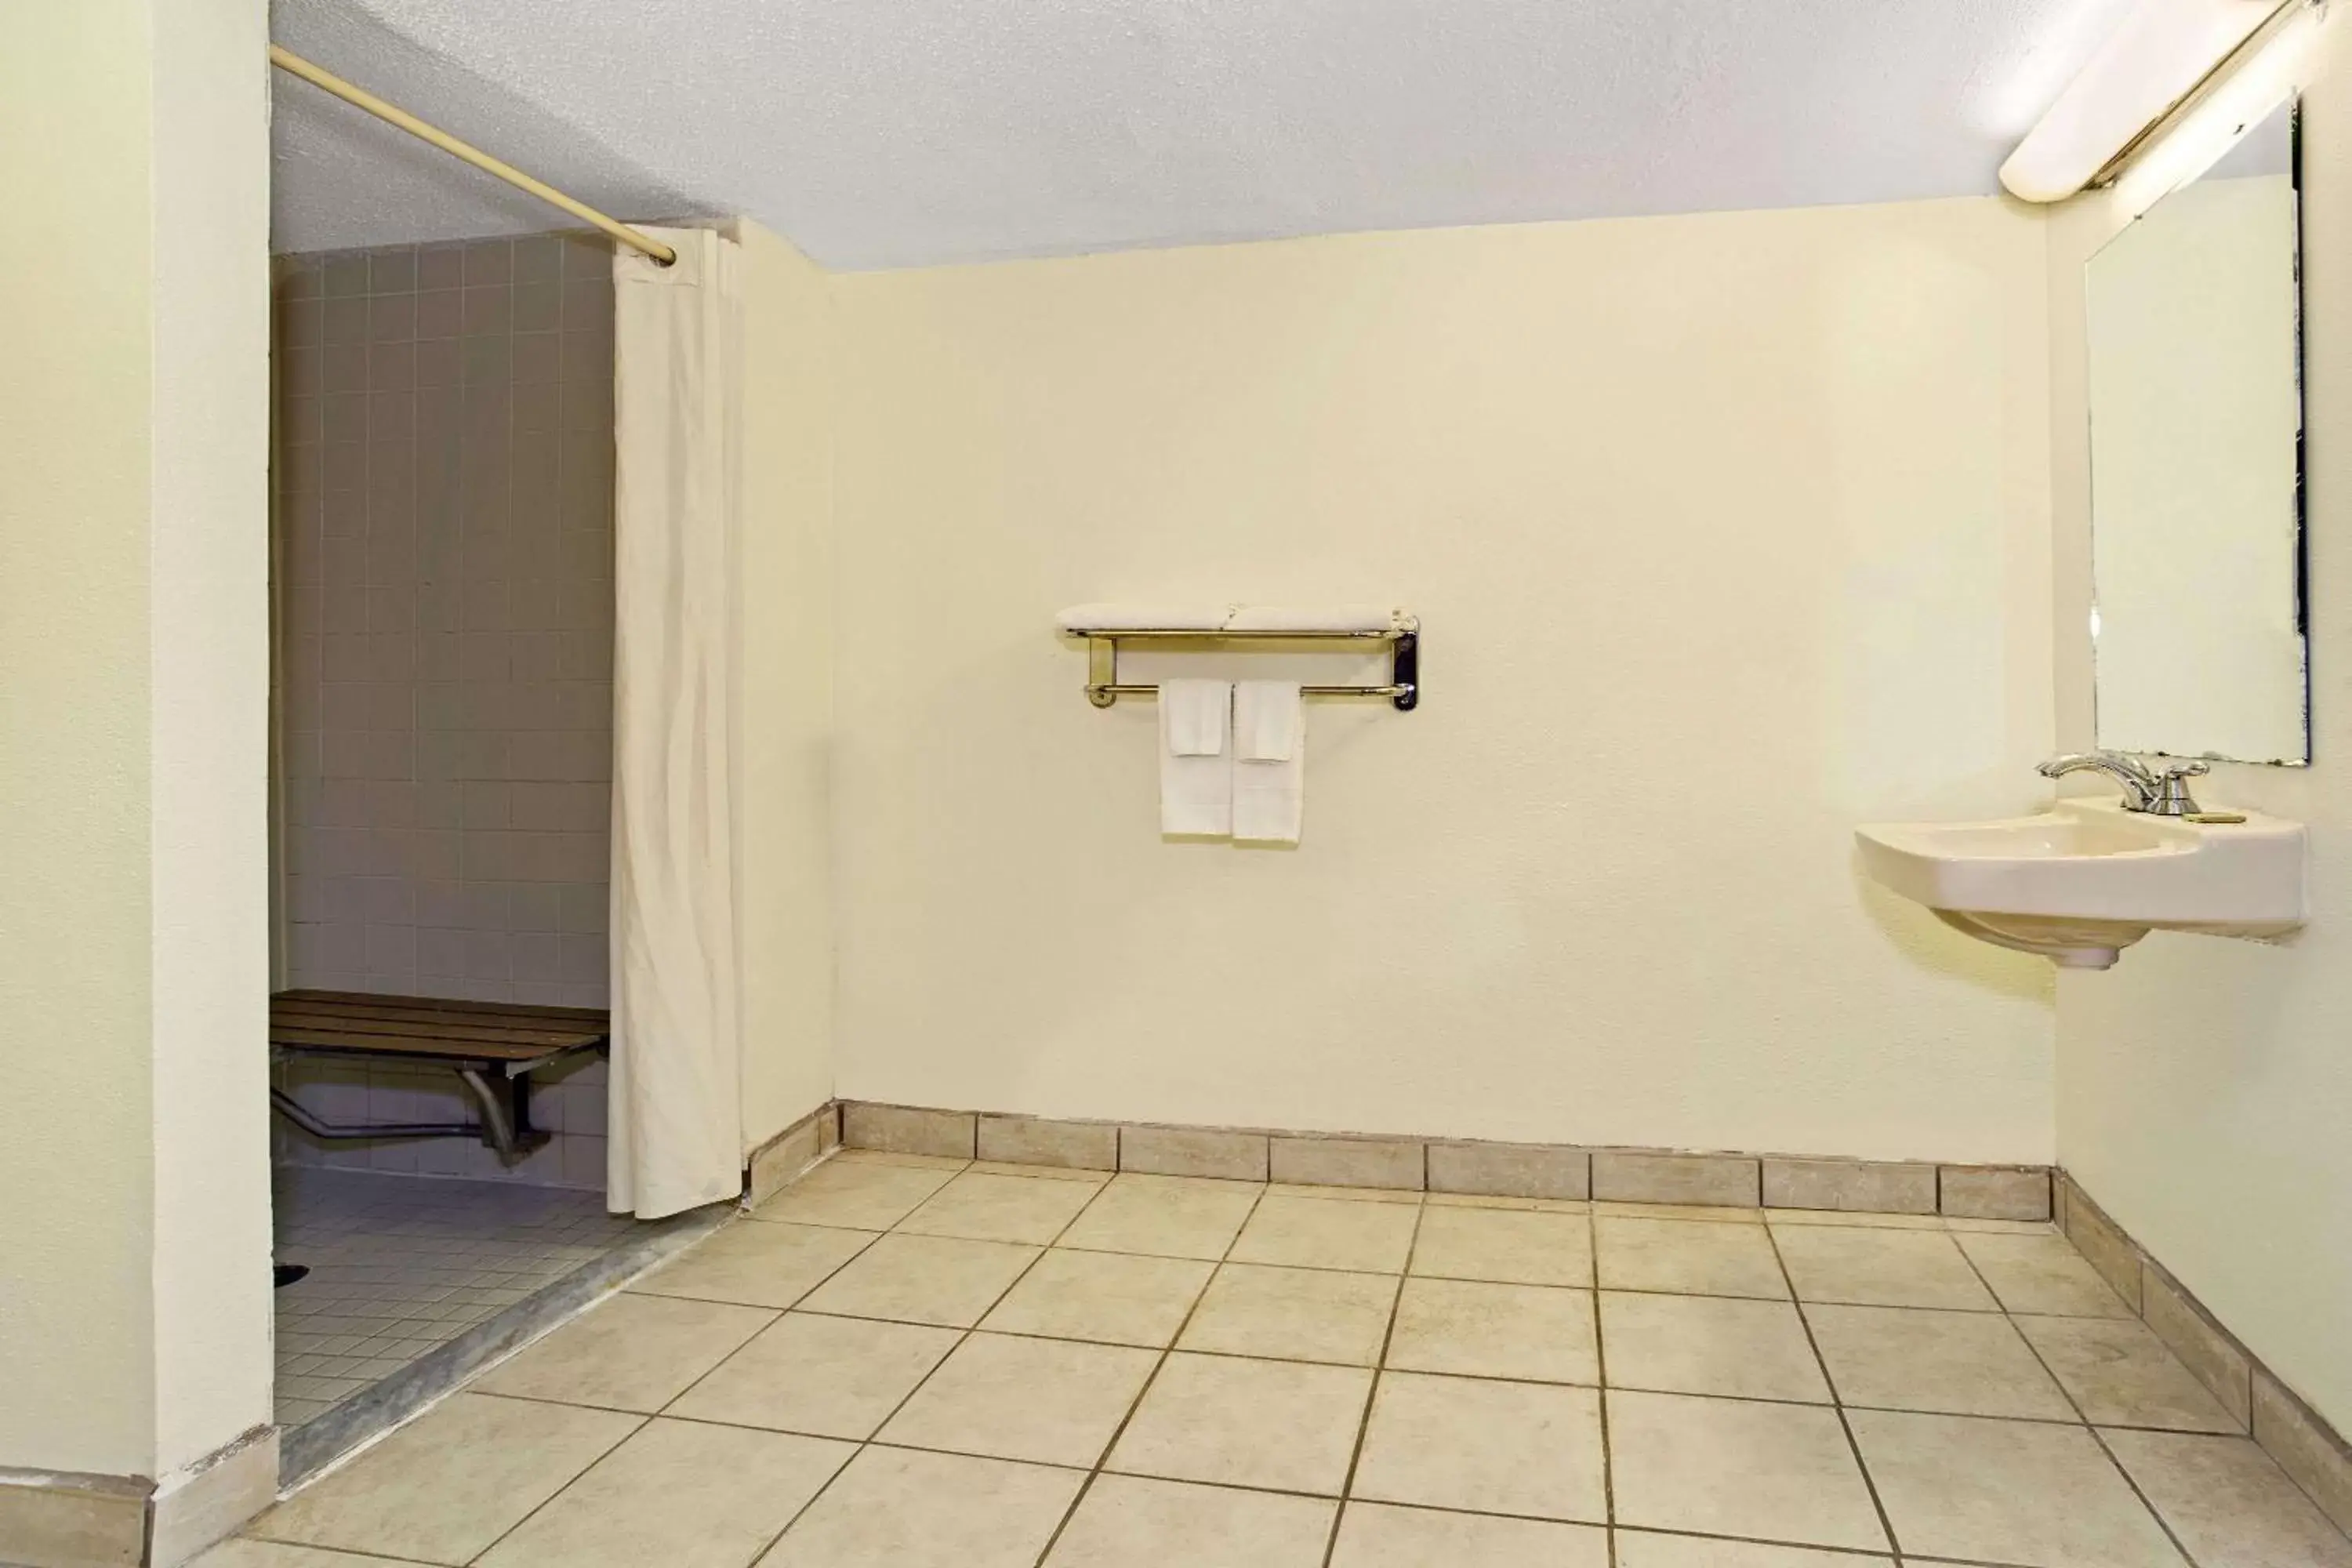 On site, Bathroom in Super 8 by Wyndham Fort Mitchell Cincinnati Area